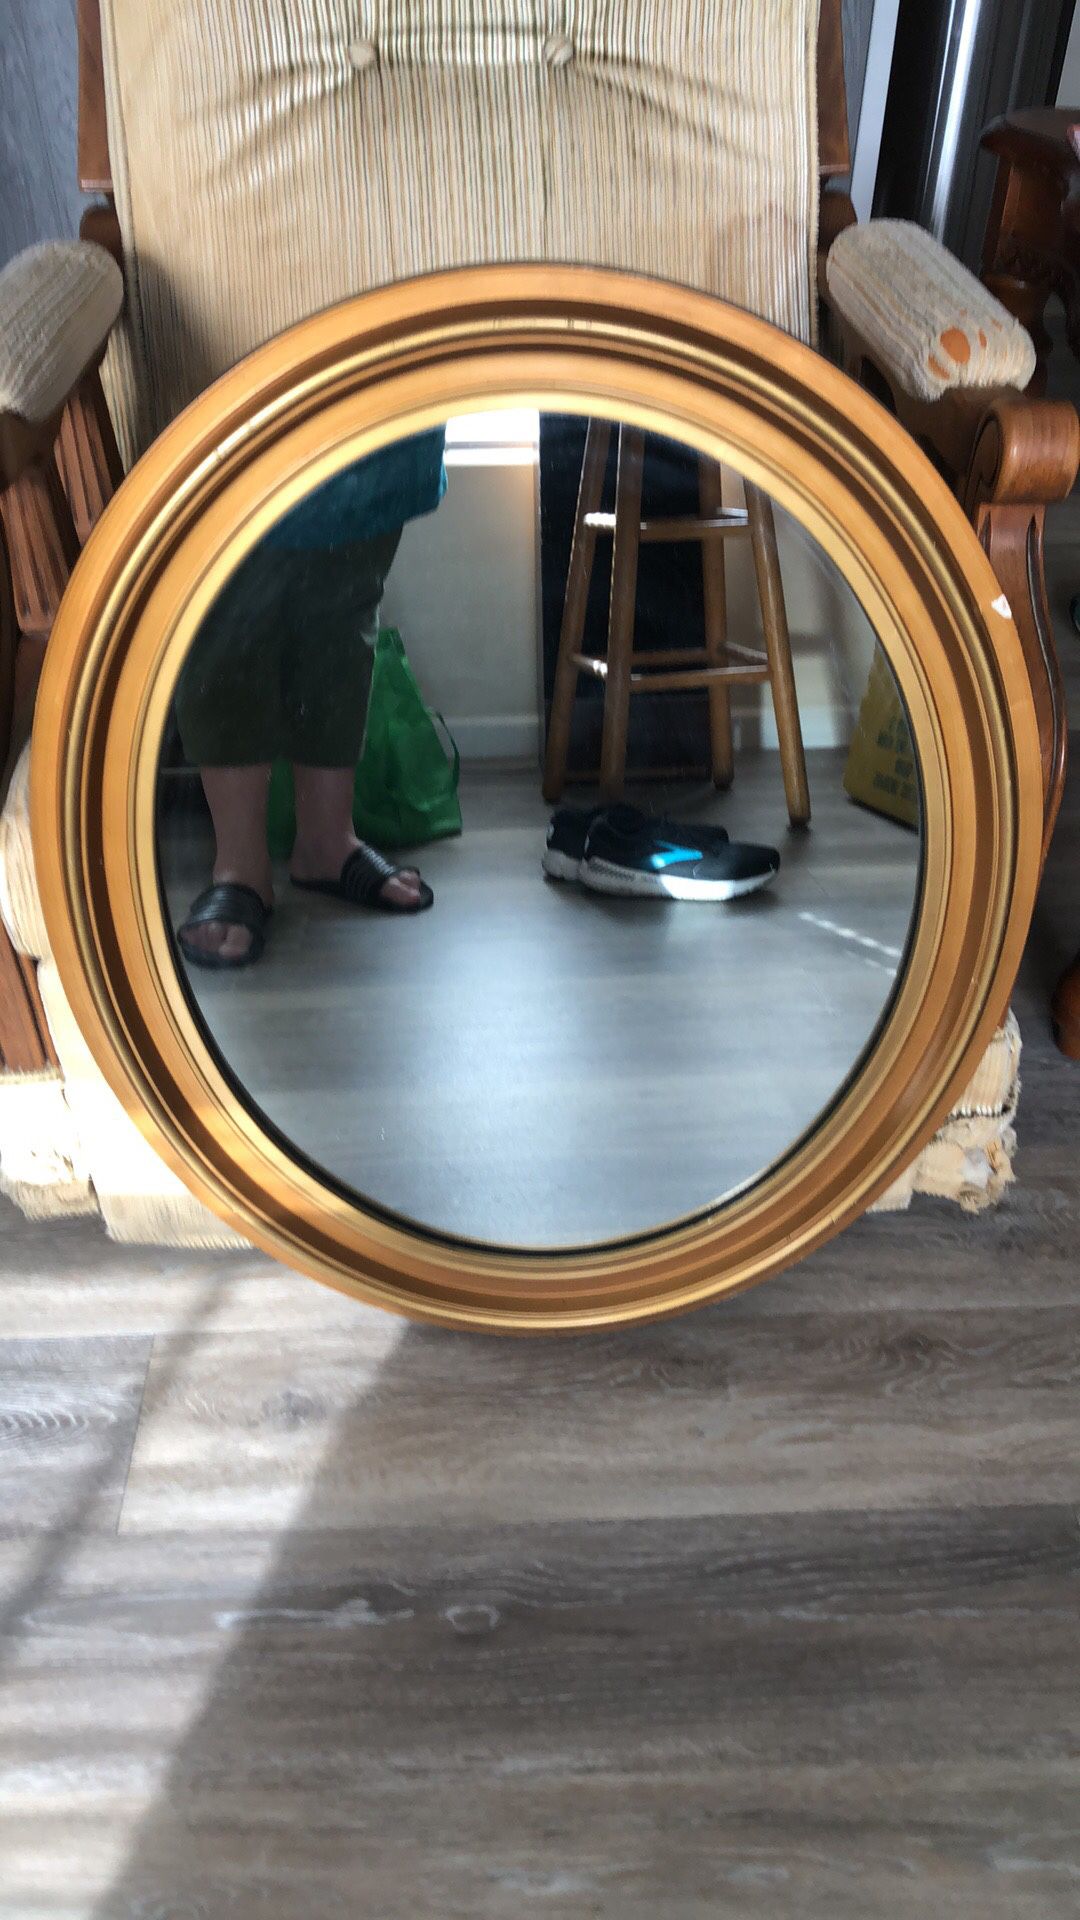 Antique Mirror 